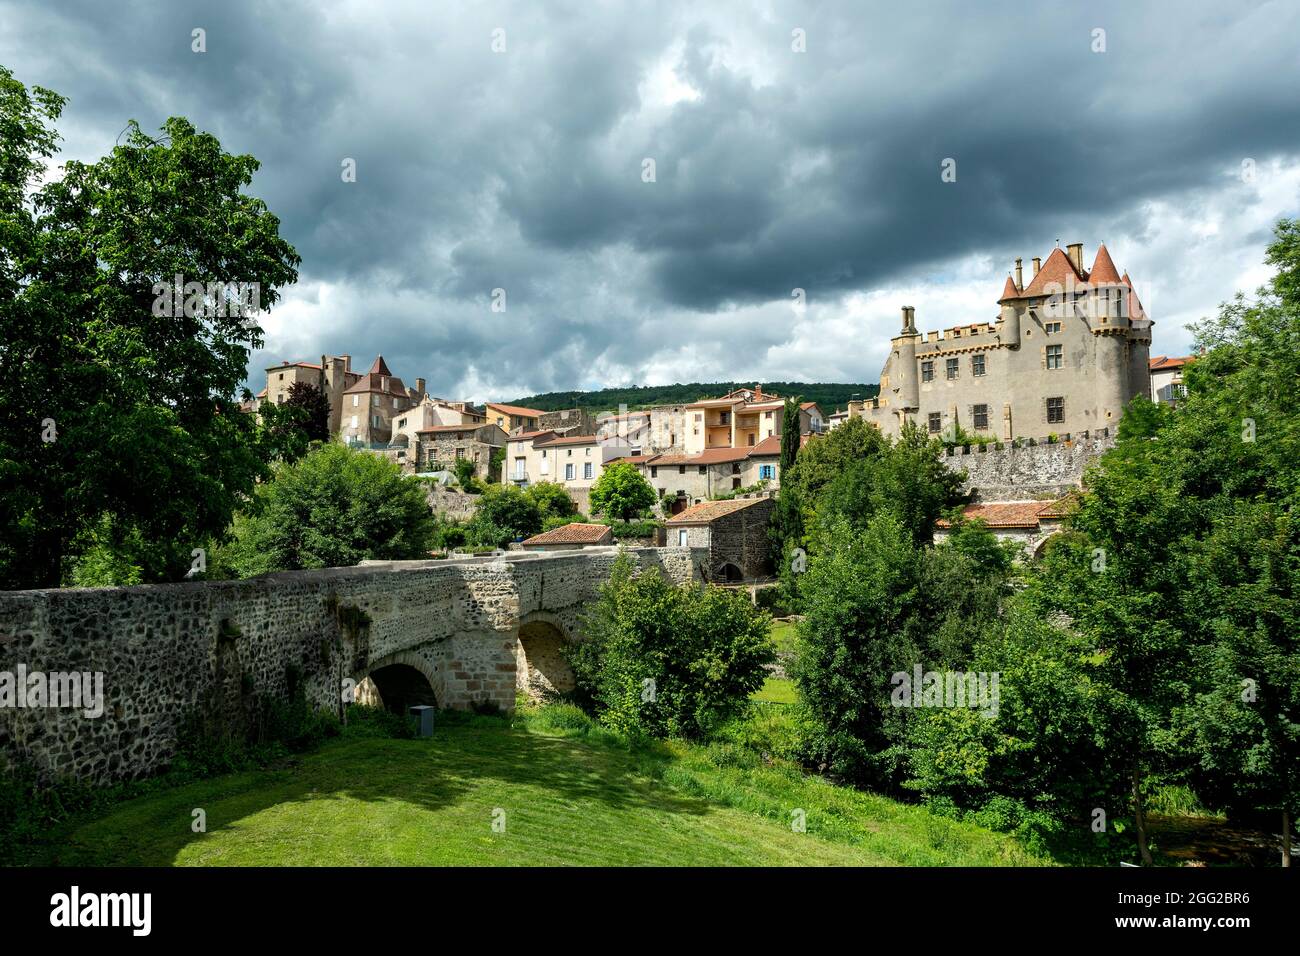 Village de Saint Amant Tallende, pont sur la rivière Monne et château de Murol à Saint Amant, Puy de Dome, Auvergne Rhône Alpes, France Banque D'Images